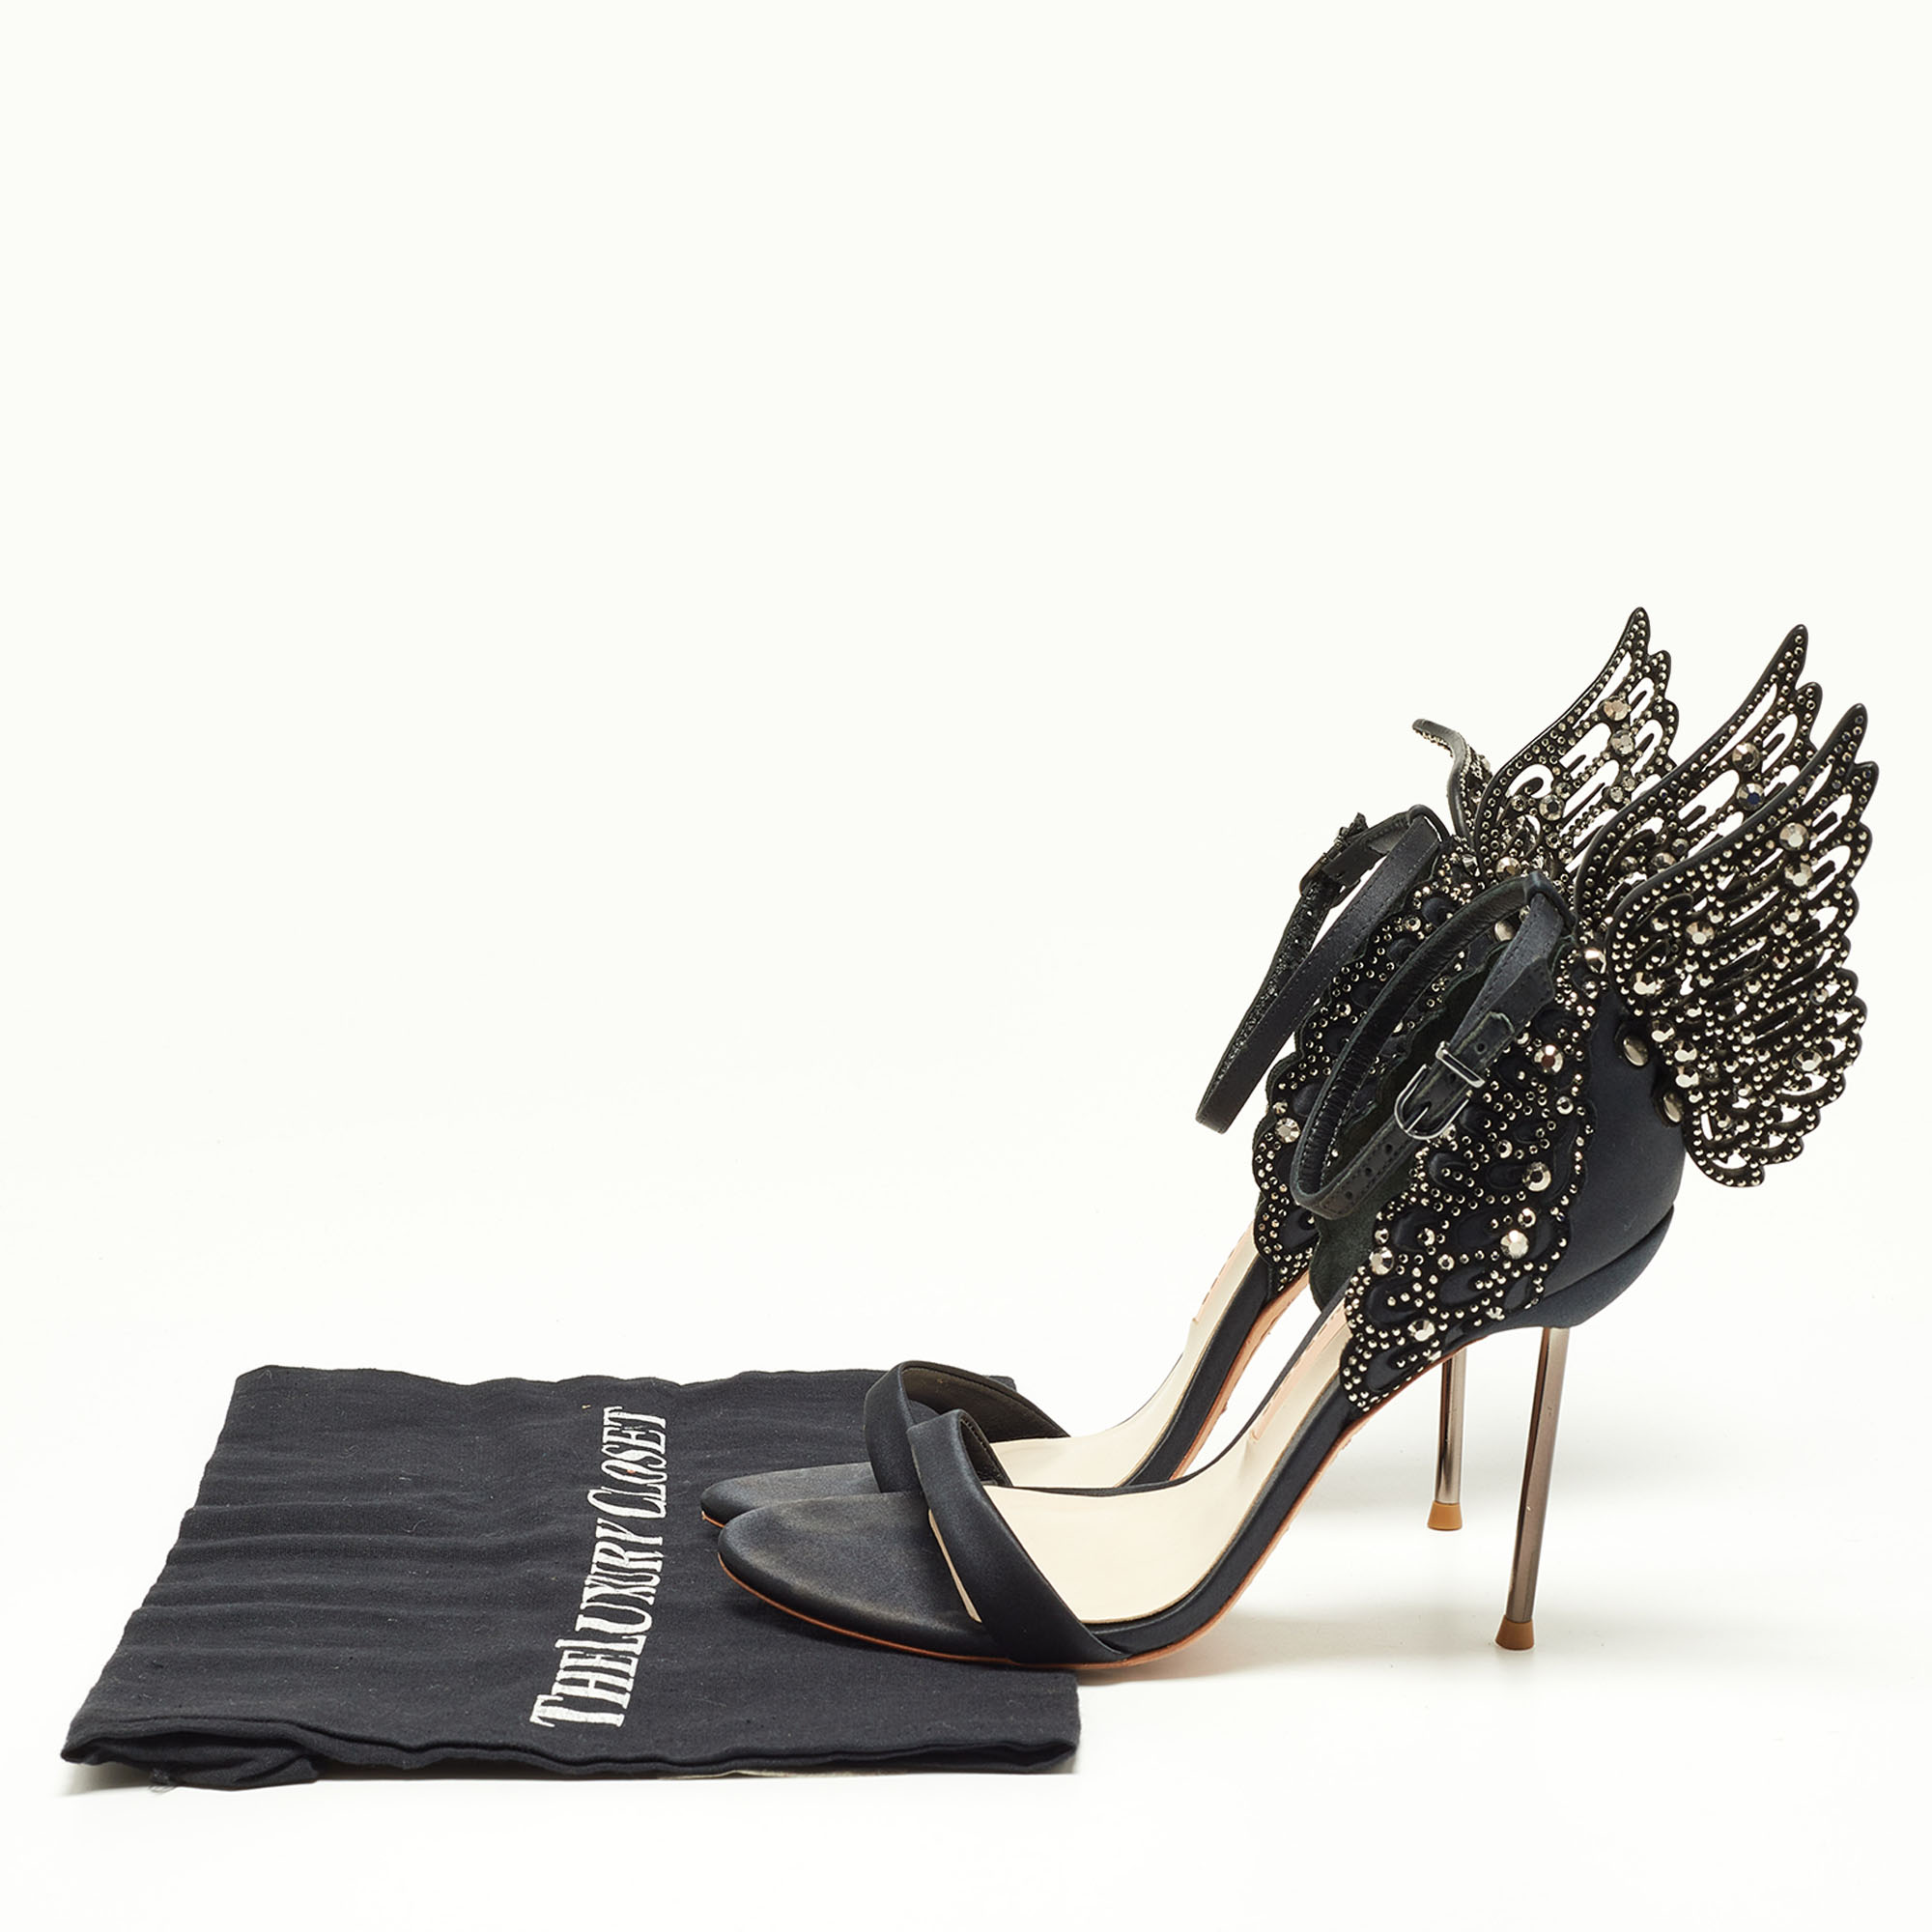 Sophia Webster Black Satin Crystal Embellished Evangeline Ankle Strap Sandals Size 36.5